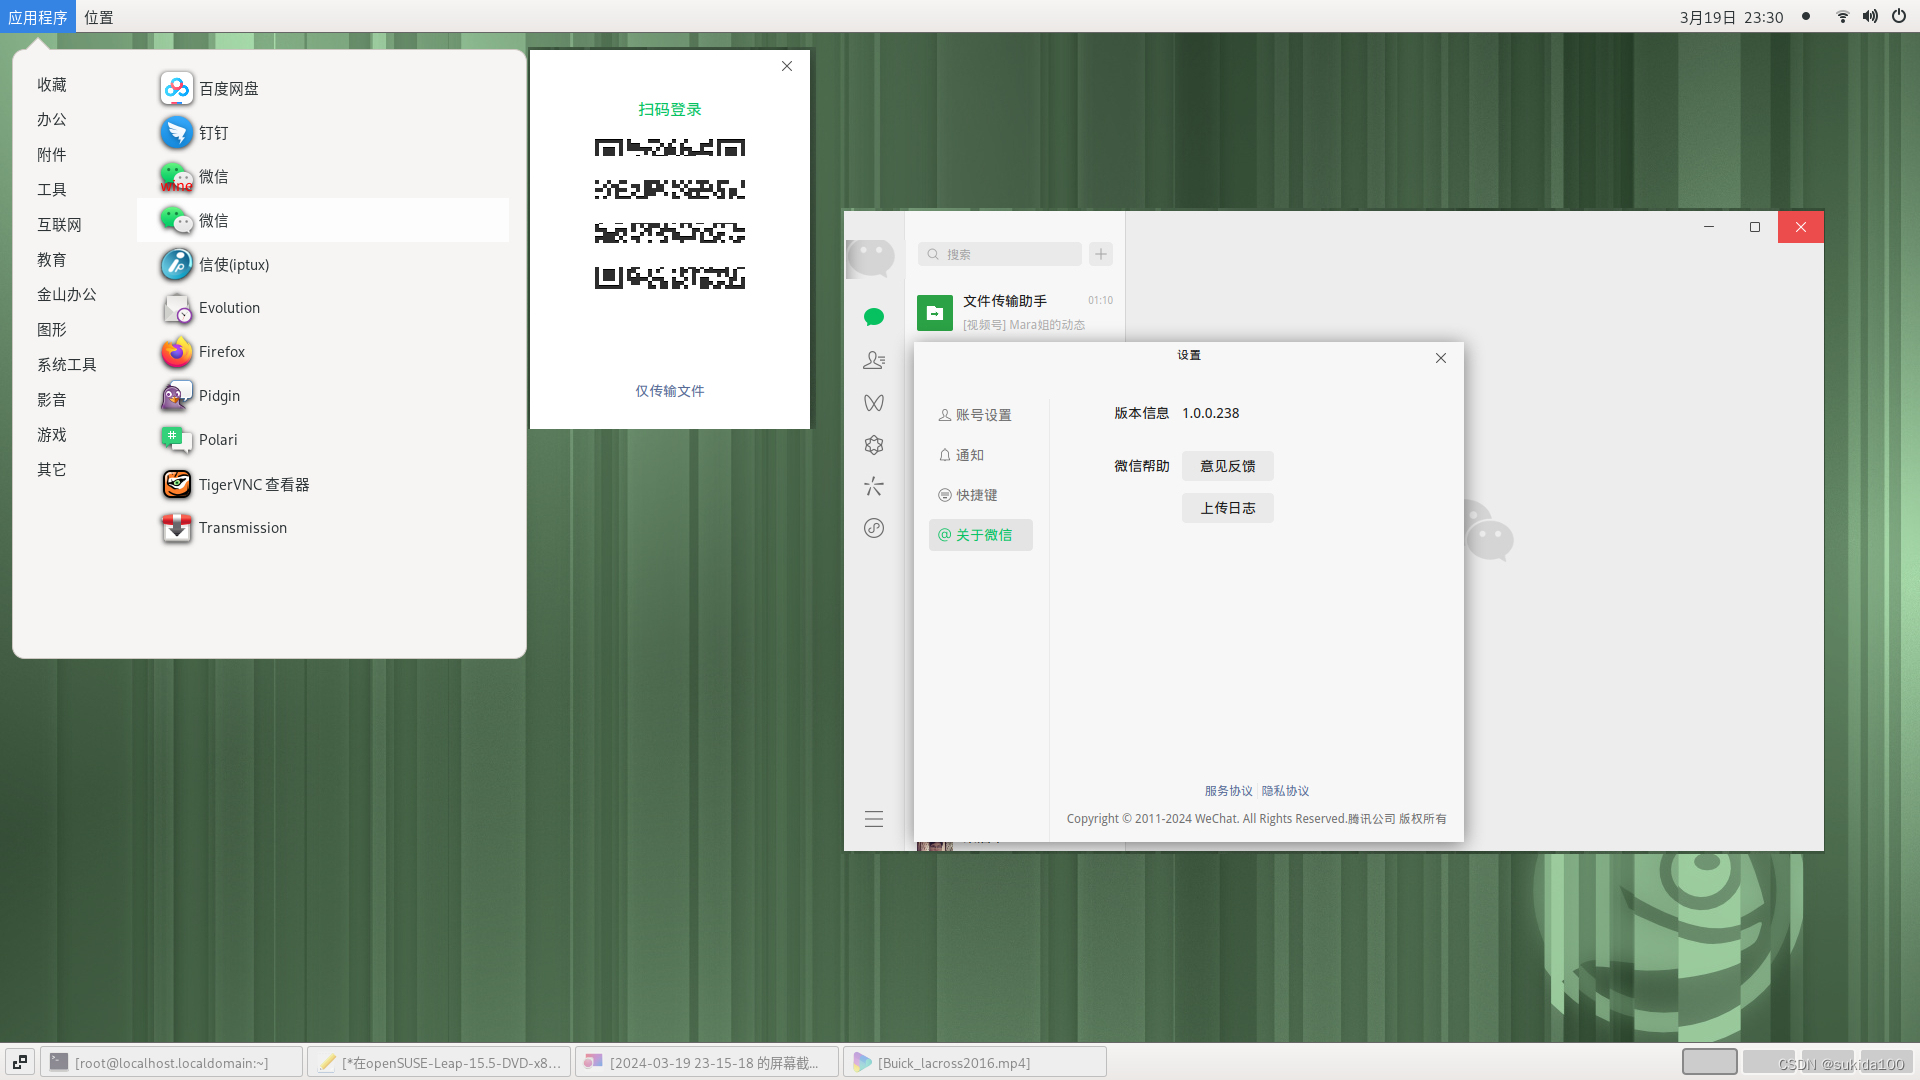 在openSUSE-Leap-15.5-DVD-x86_64中使用微信wechat-beta-1.0.0.238